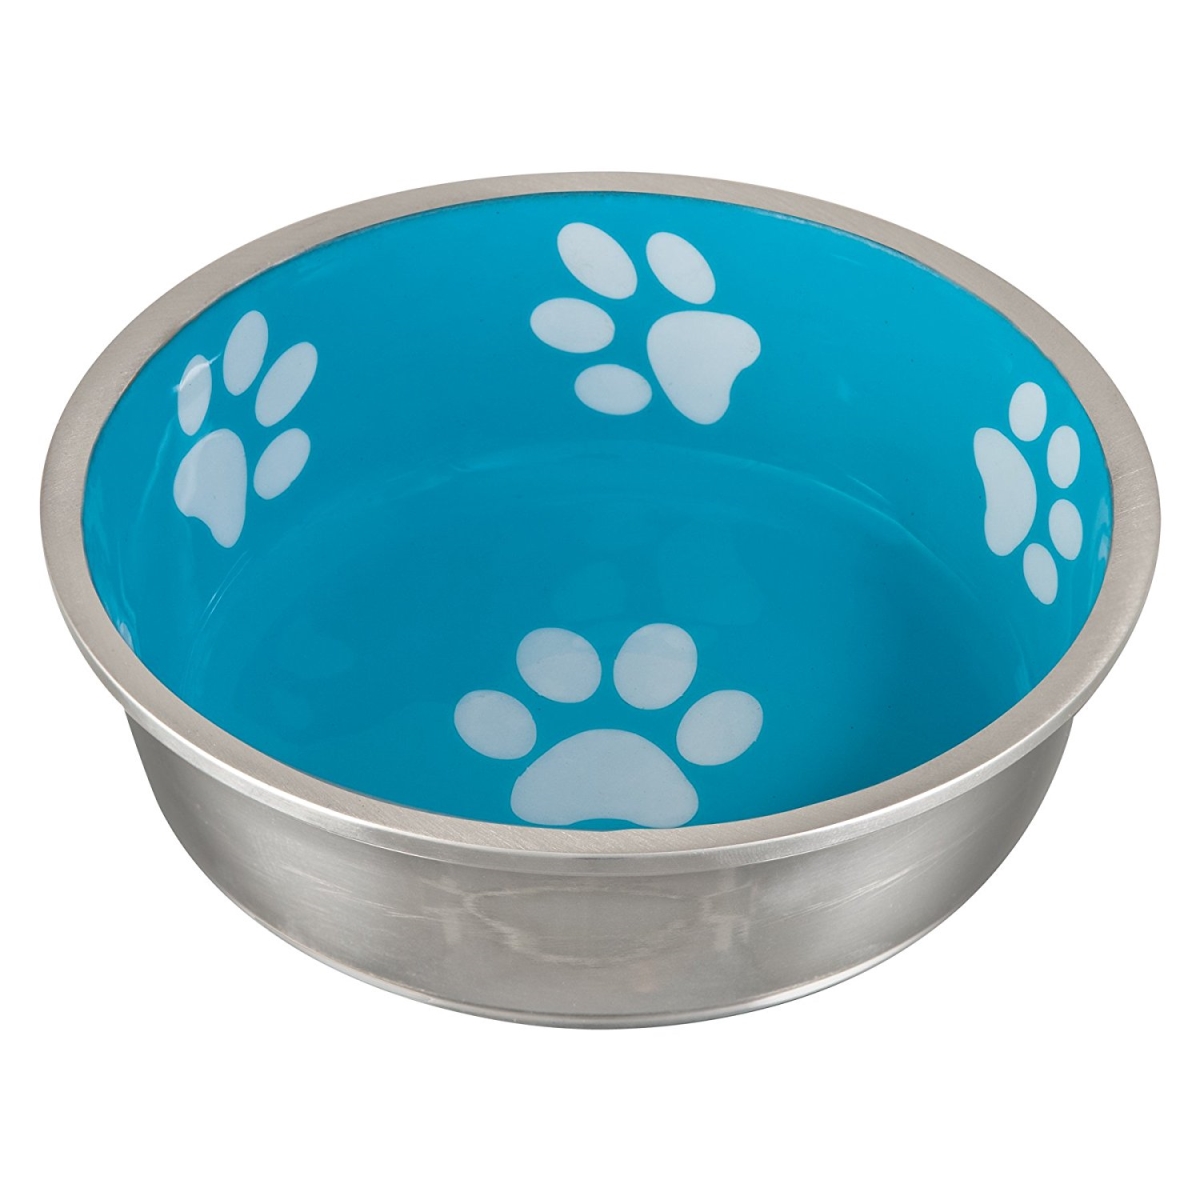 Lovin 430242 Loving Pets Robusto Bowl For Small Dogs & Cats, Aqua - Extra Small